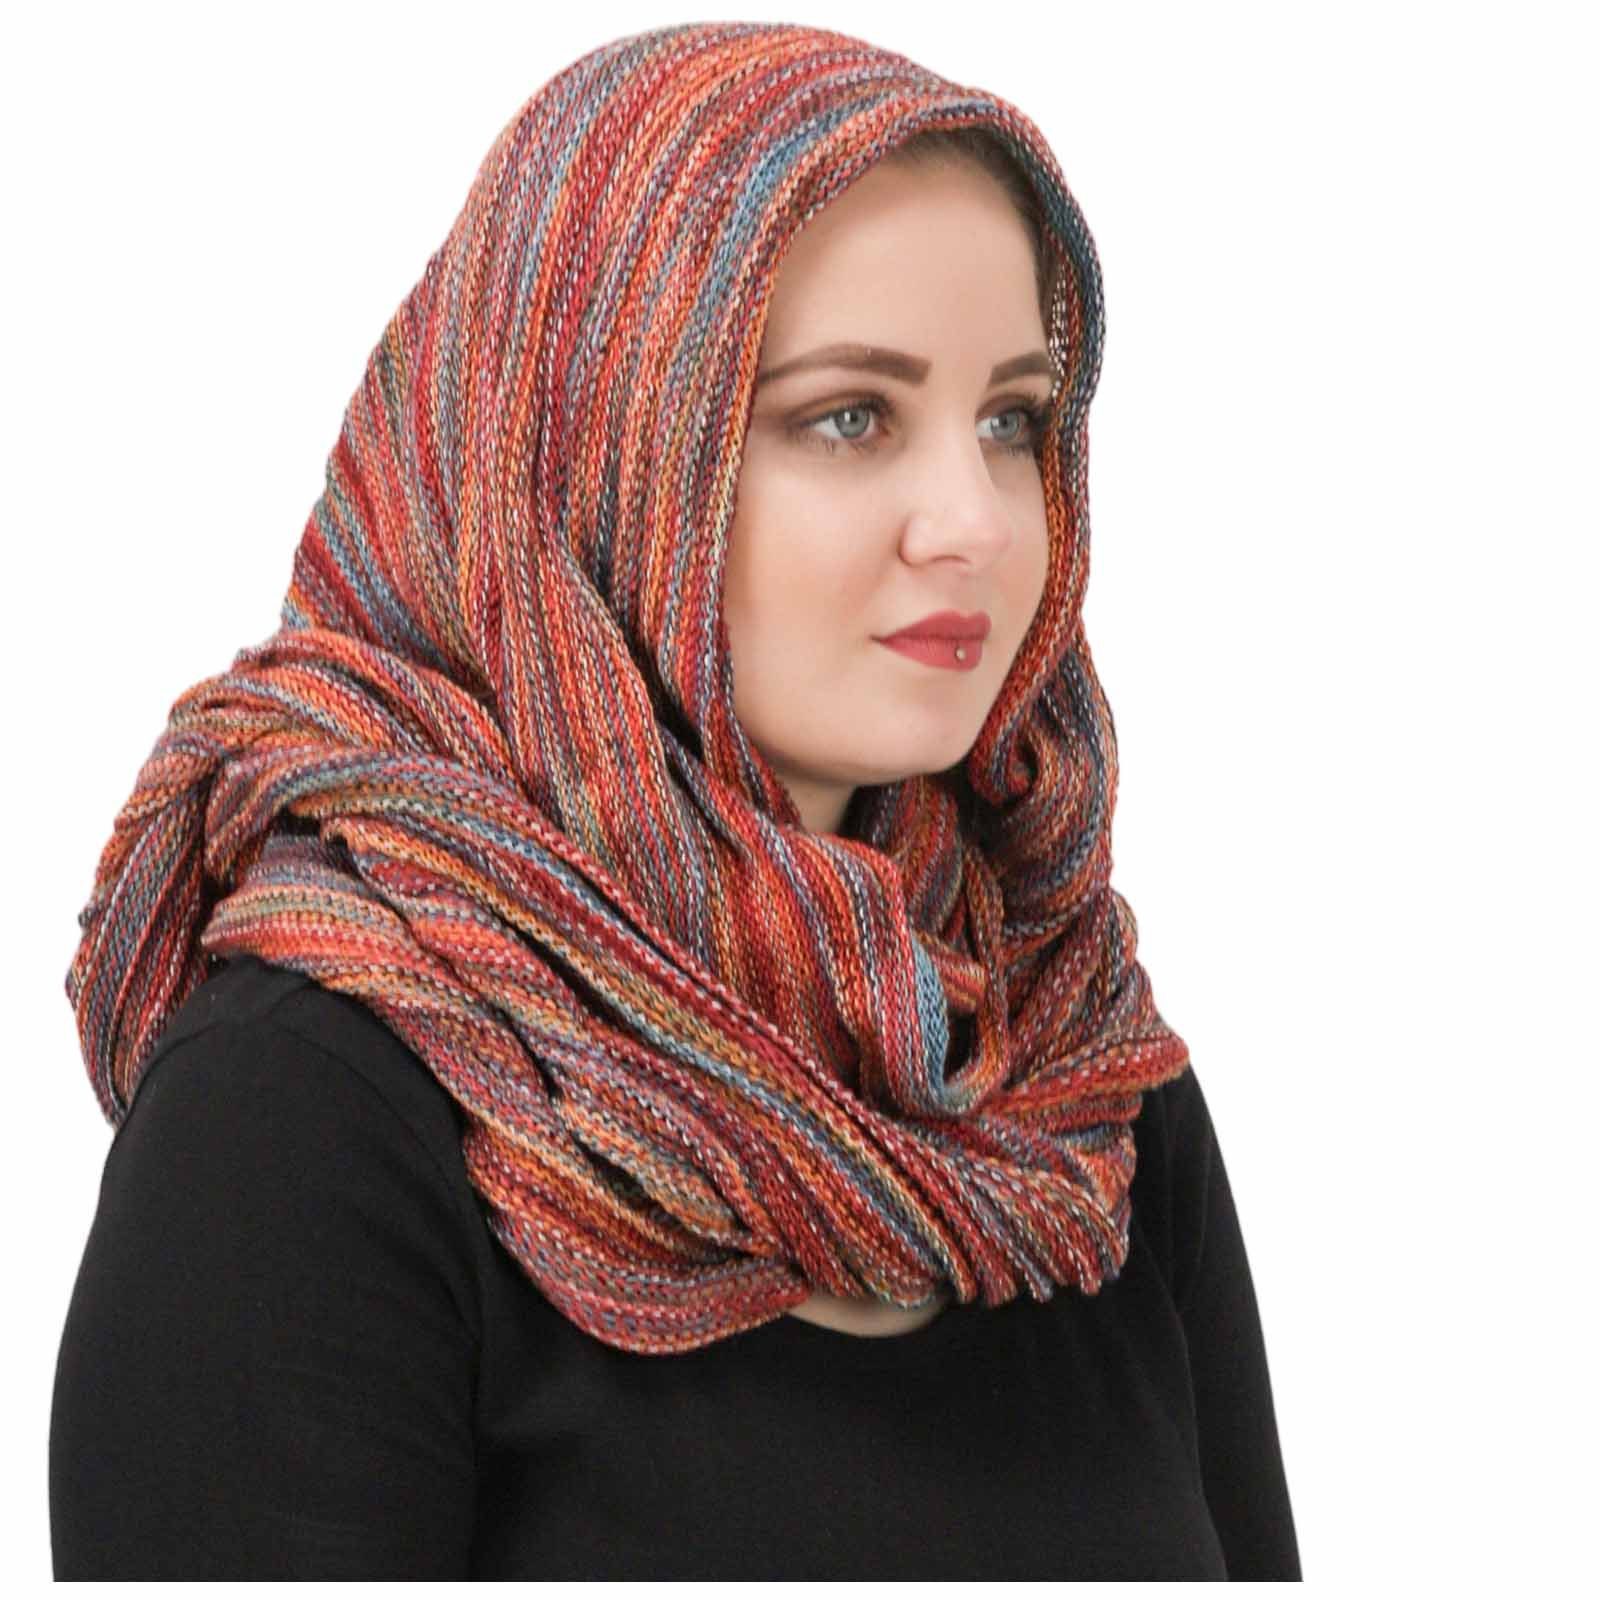 KUNST UND MAGIE Hijab Loop Dreadtube / Kapuzenschal Schlauchschal Hijab Multifunktionstuch Rot Orange